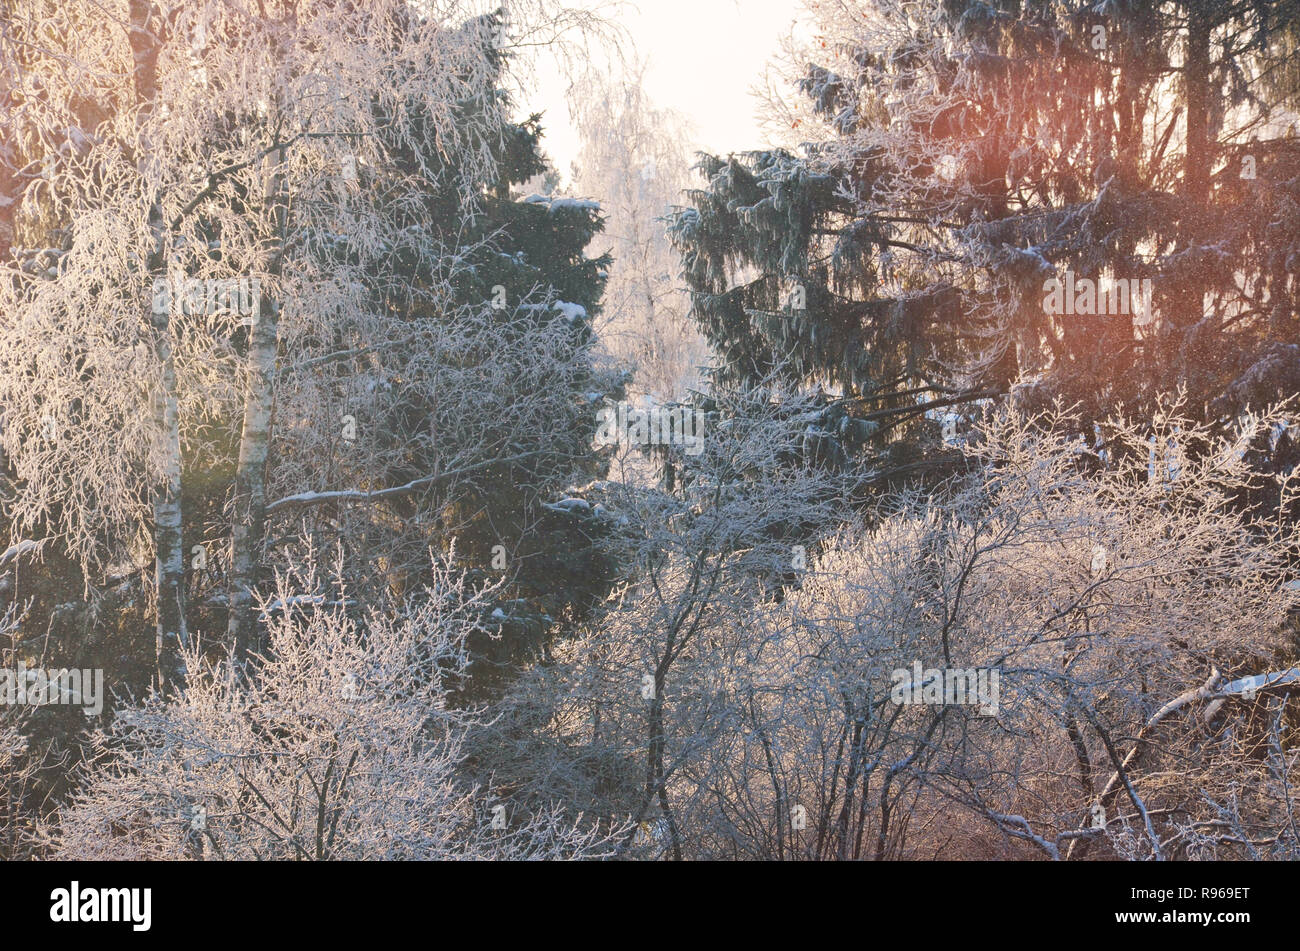 Stock Bild. Zweige von Bäumen und Sträuchern in rime Eis. Winter sonniger Wald landschaft. Stockfoto